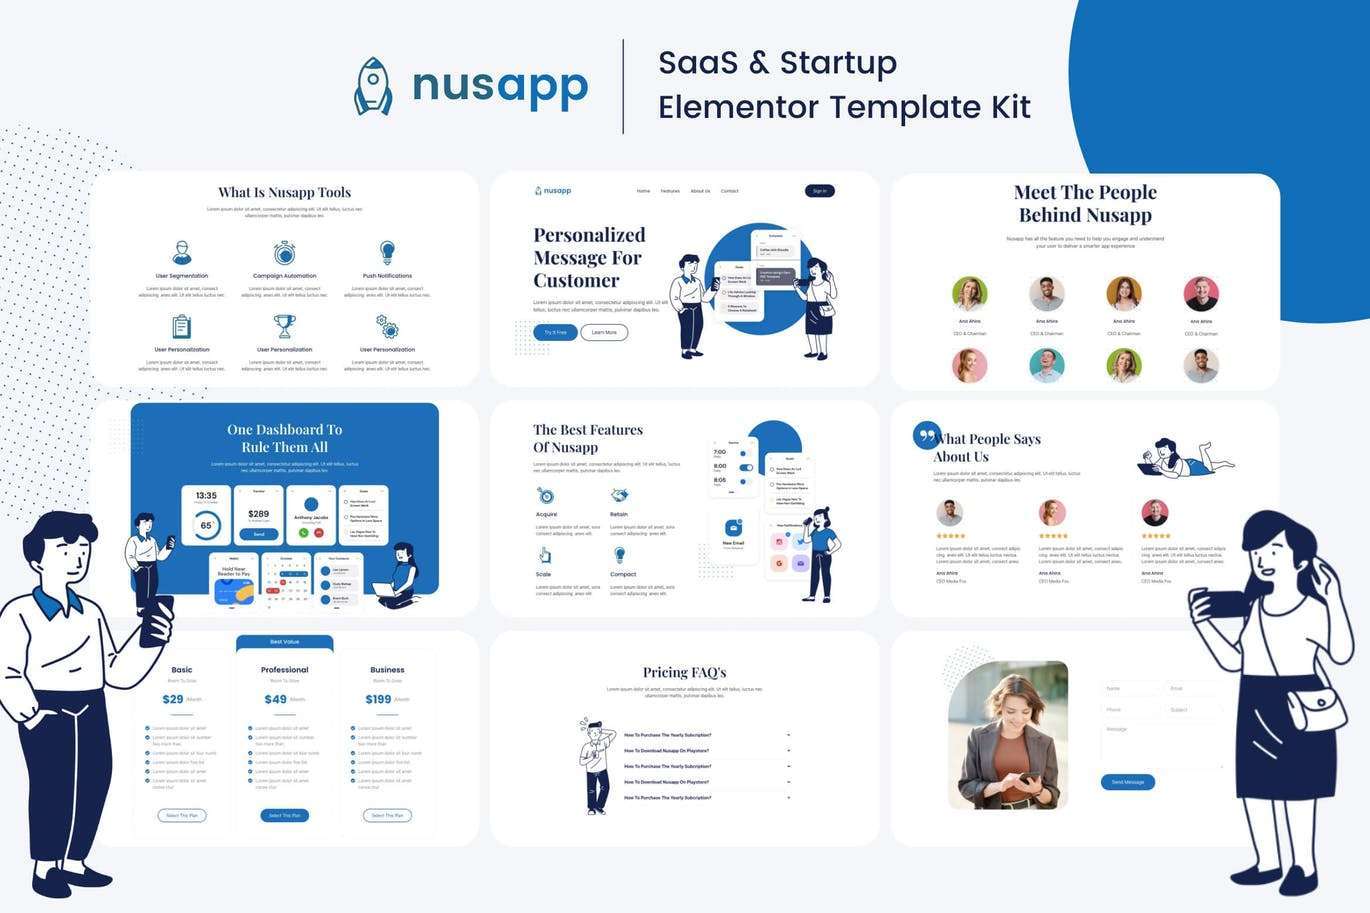 Nusapp – SaaS 启动和业务 Elementor Template Kit